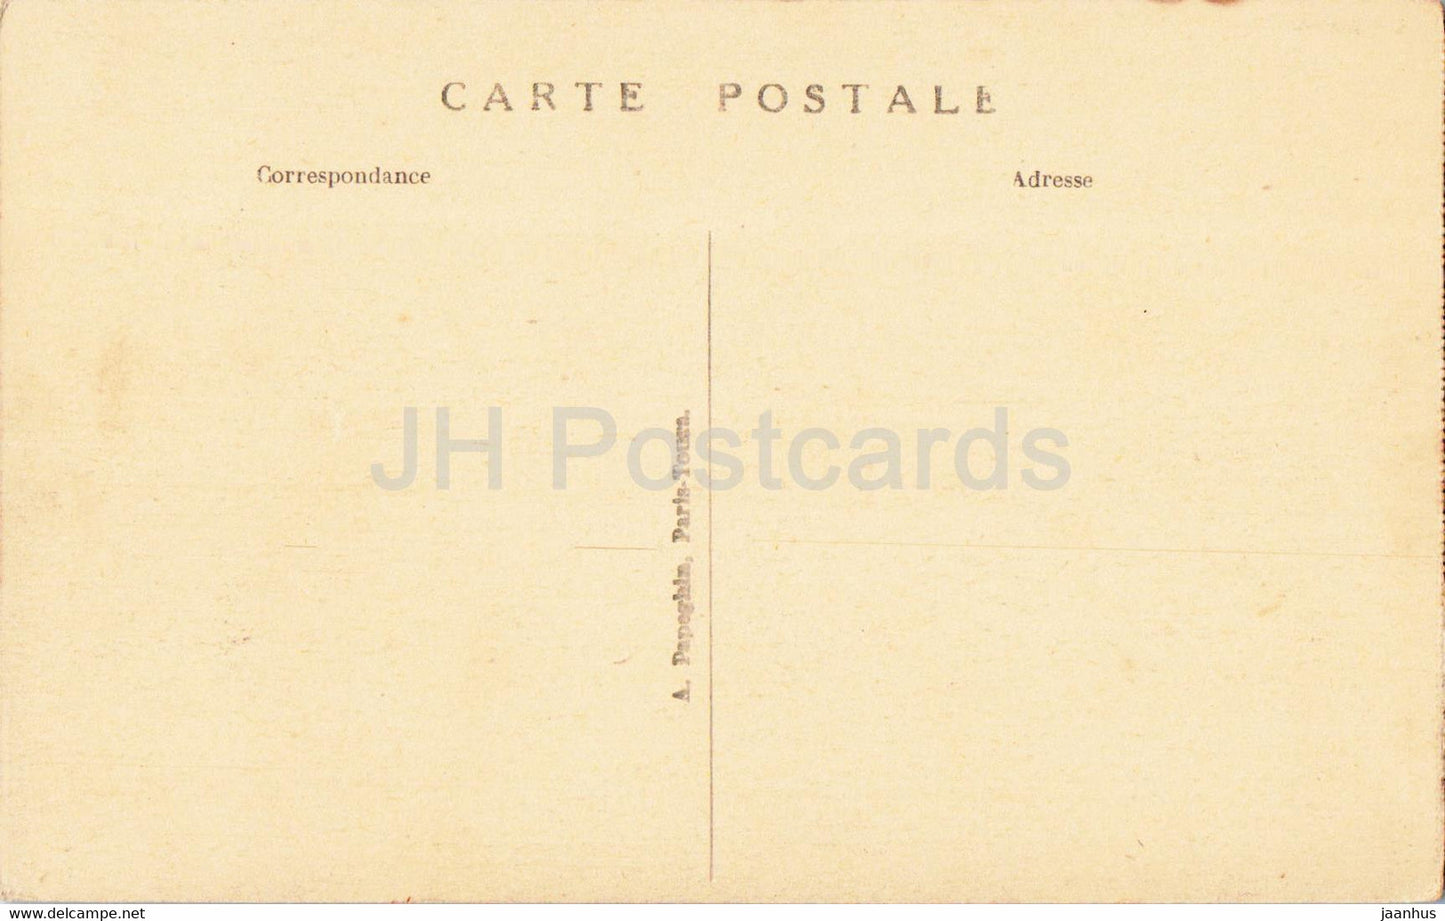 Loches - Le Chateau Royal et Porte des Cordeliers - 78 - old postcard - France - unused